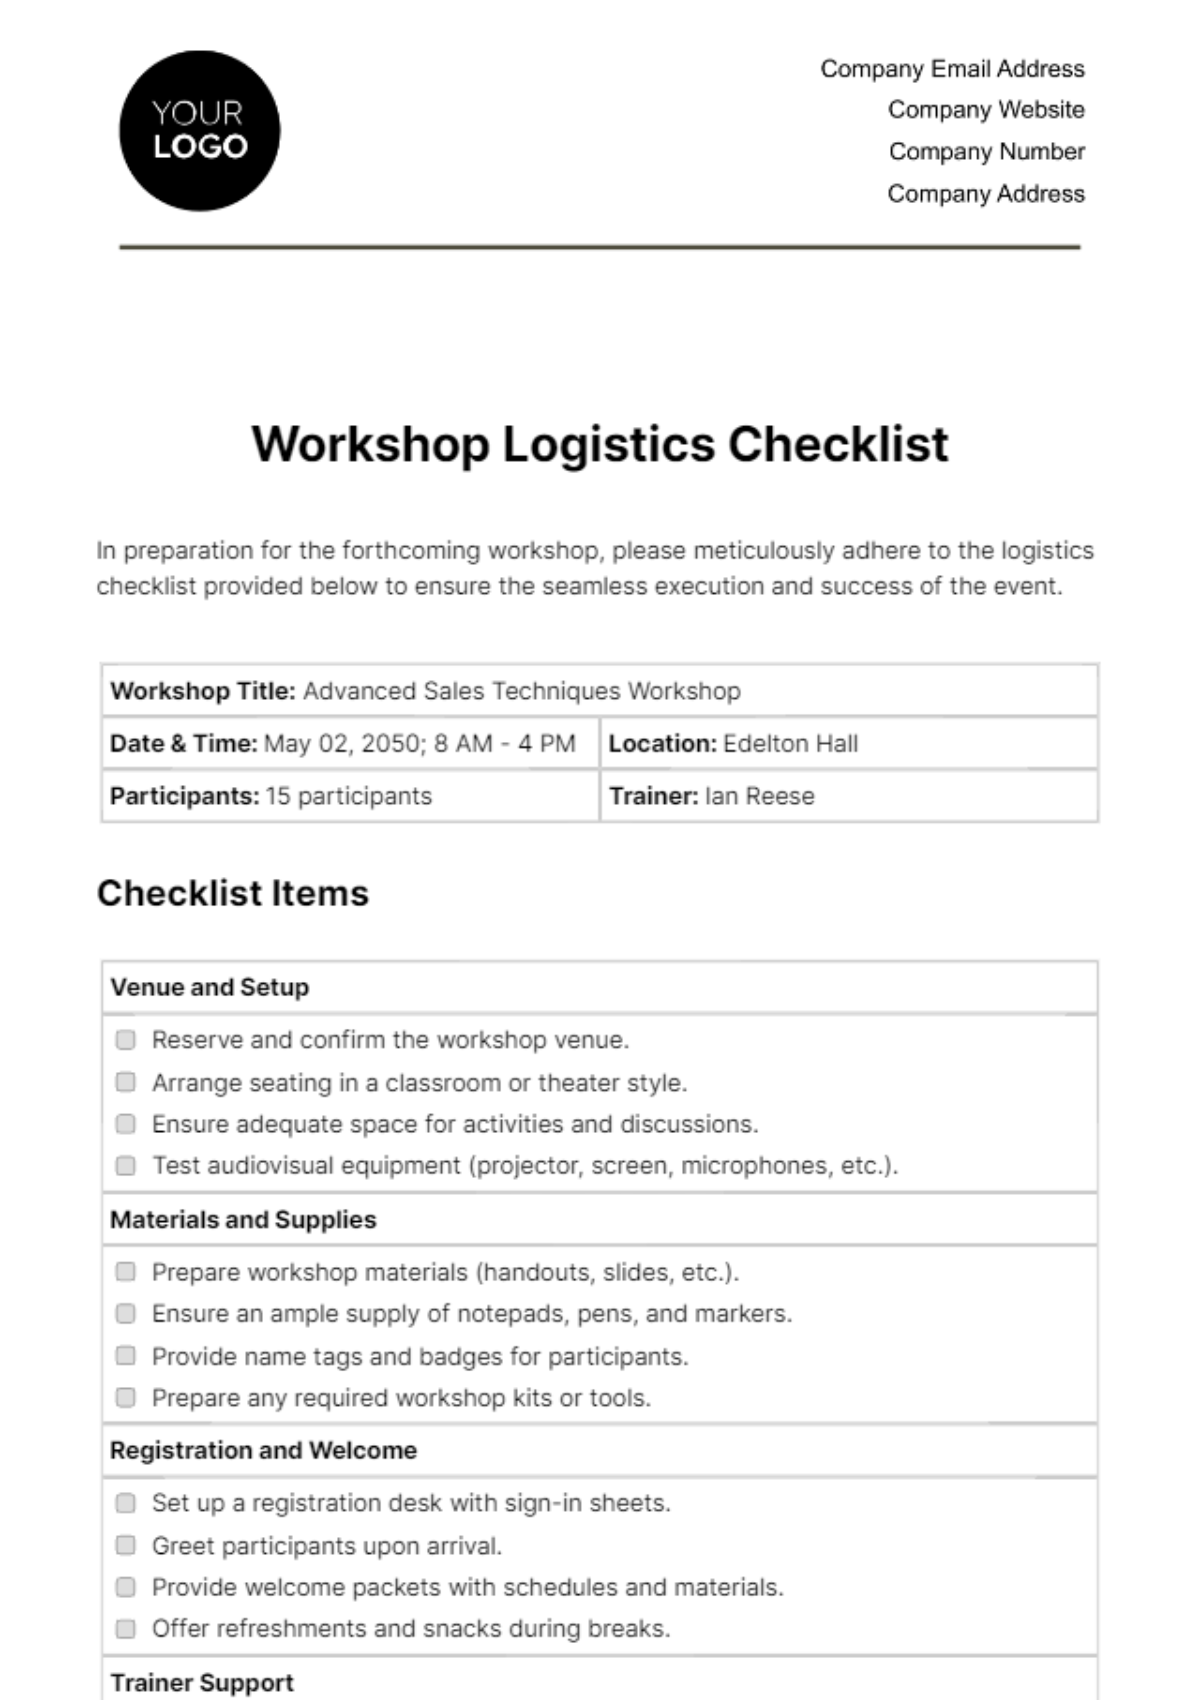 Workshop Logistics Checklist HR Template